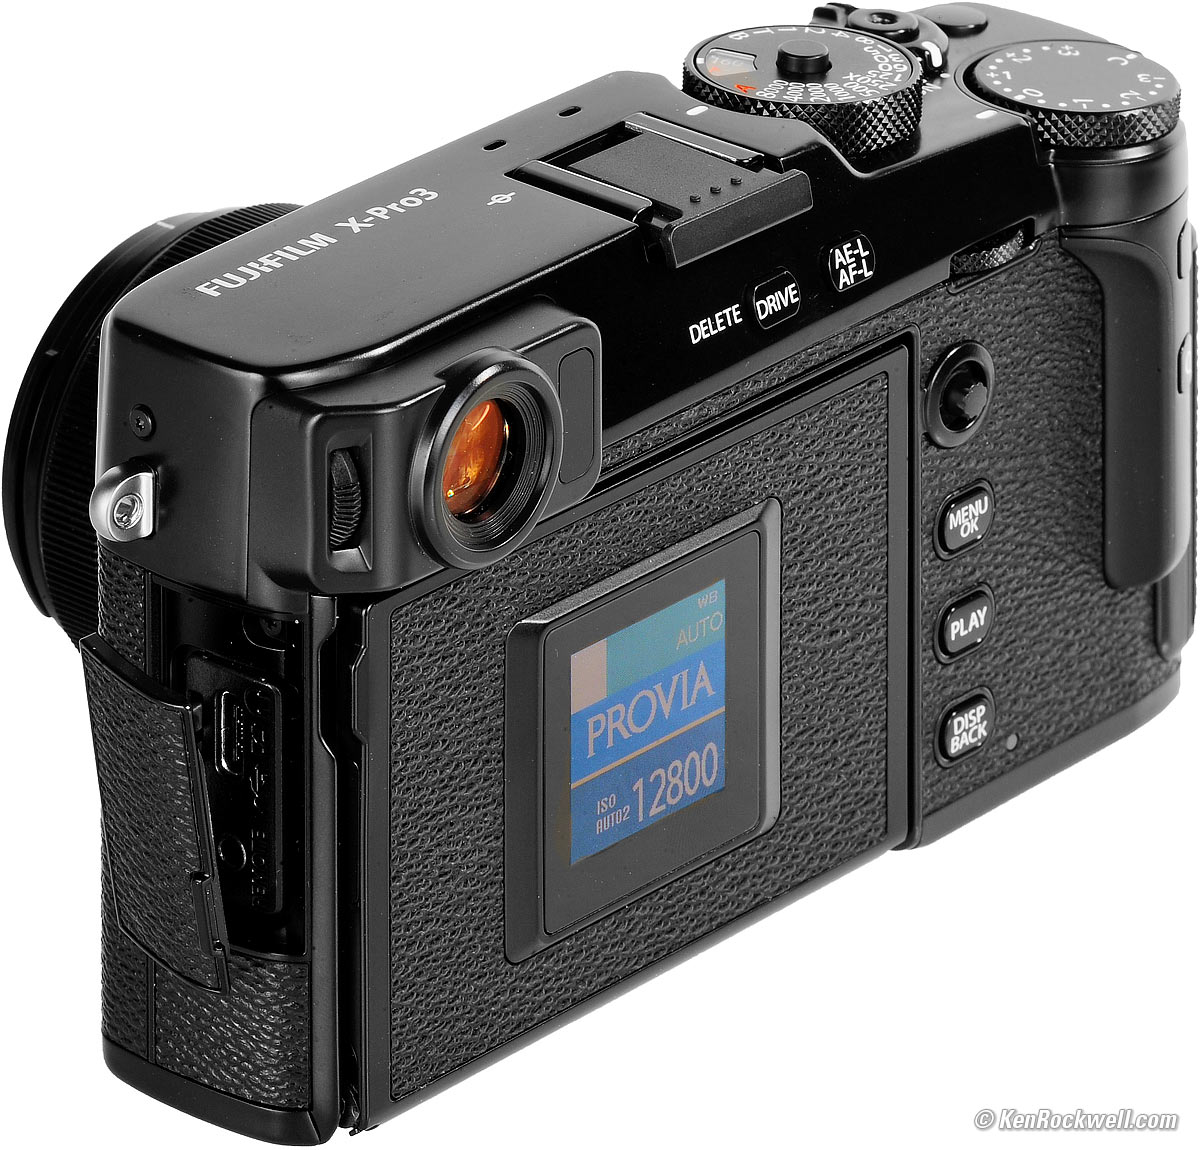 Renovatie halfgeleider Doorzichtig Fujifilm X-Pro3 Review